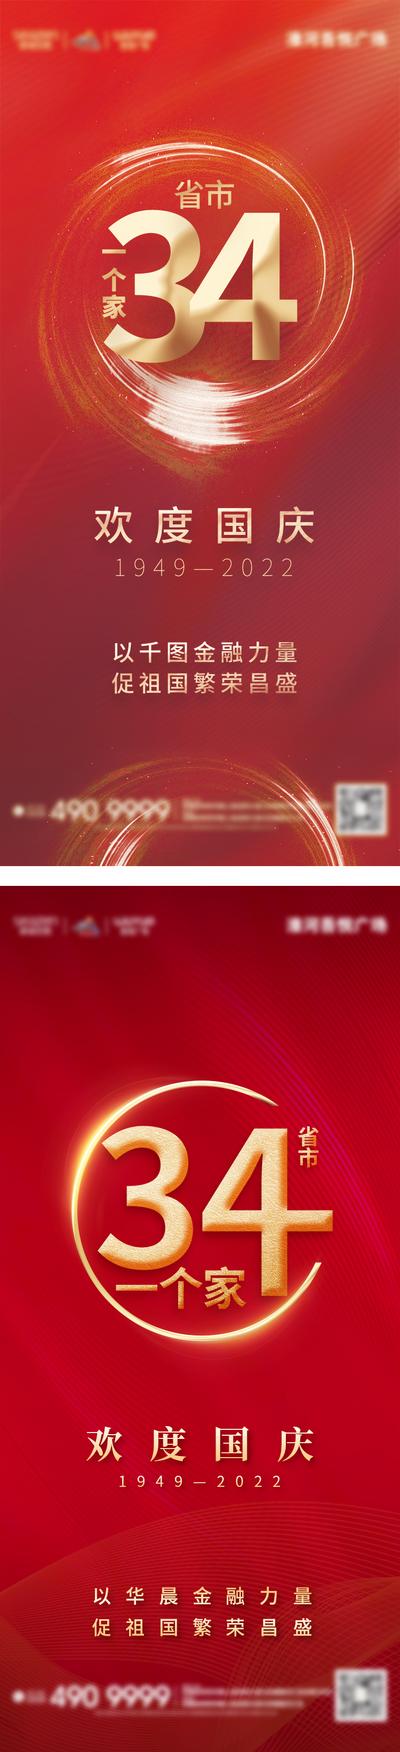 南门网 广告 海报 电商 国庆 地产 医美 活动 汽车 教育 节日